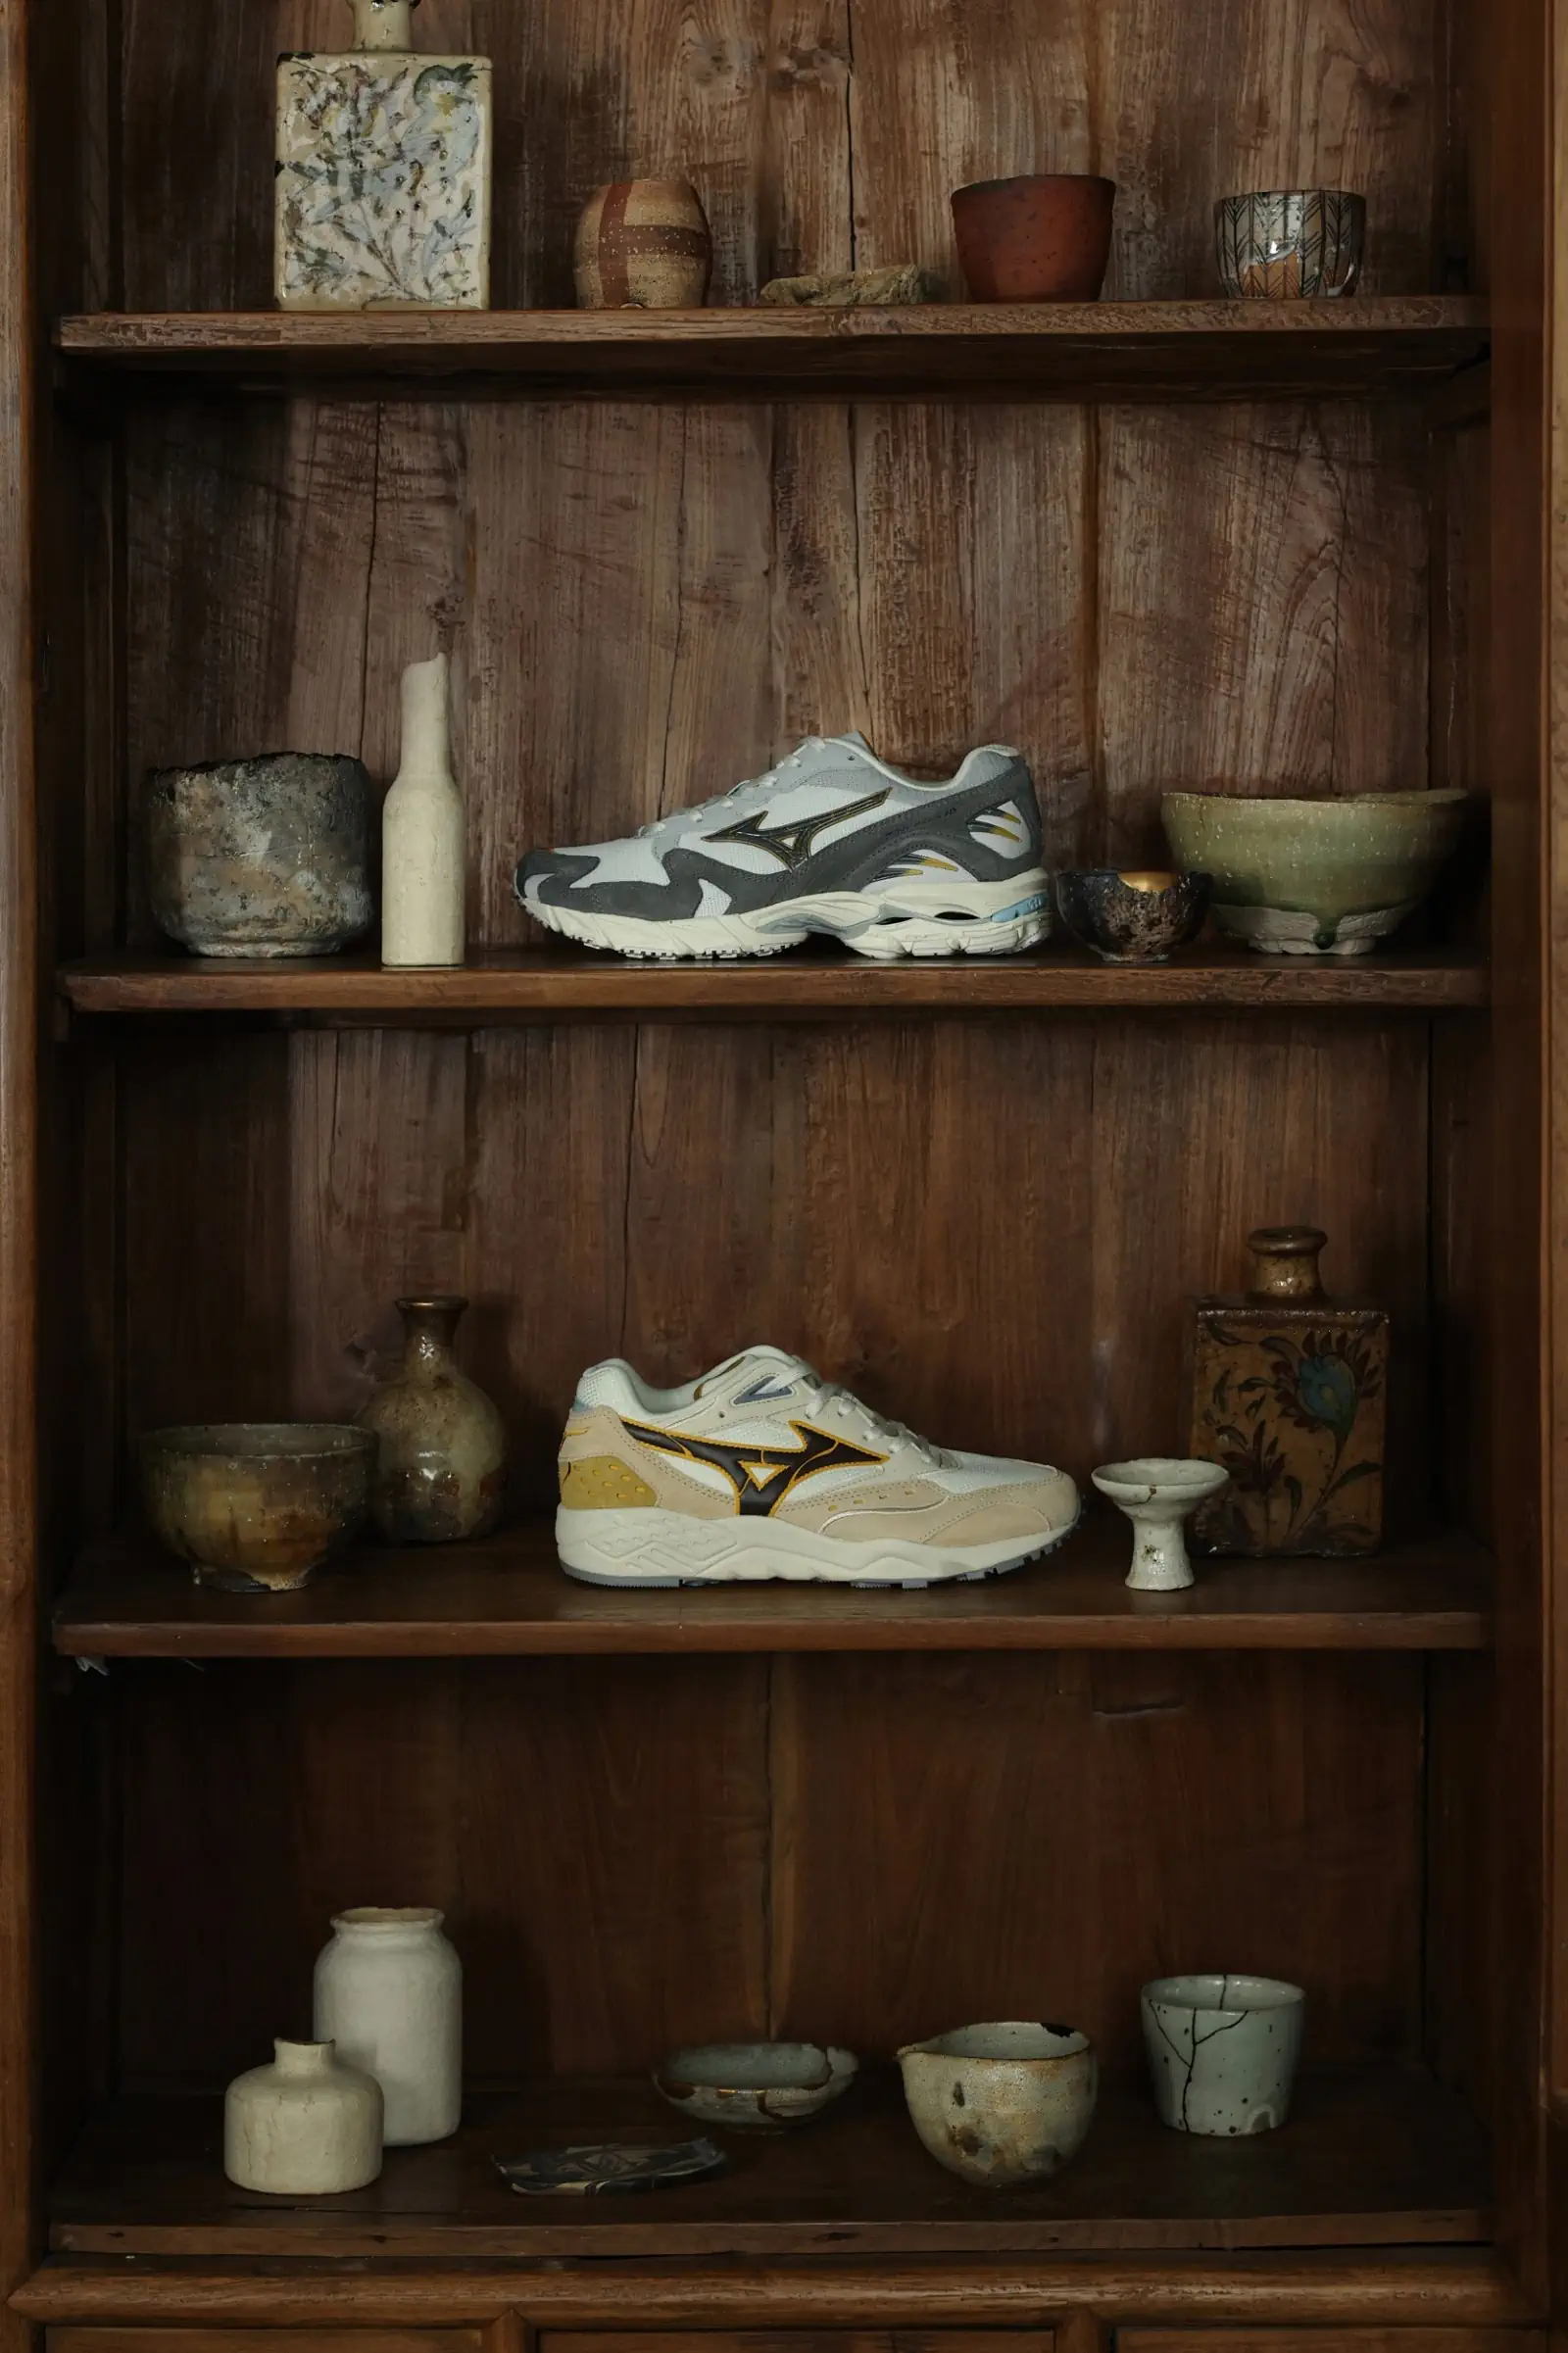 Mizuno Pack Kizuna : Un hommage à la tradition et à la perfection esthétique dans la chaussure